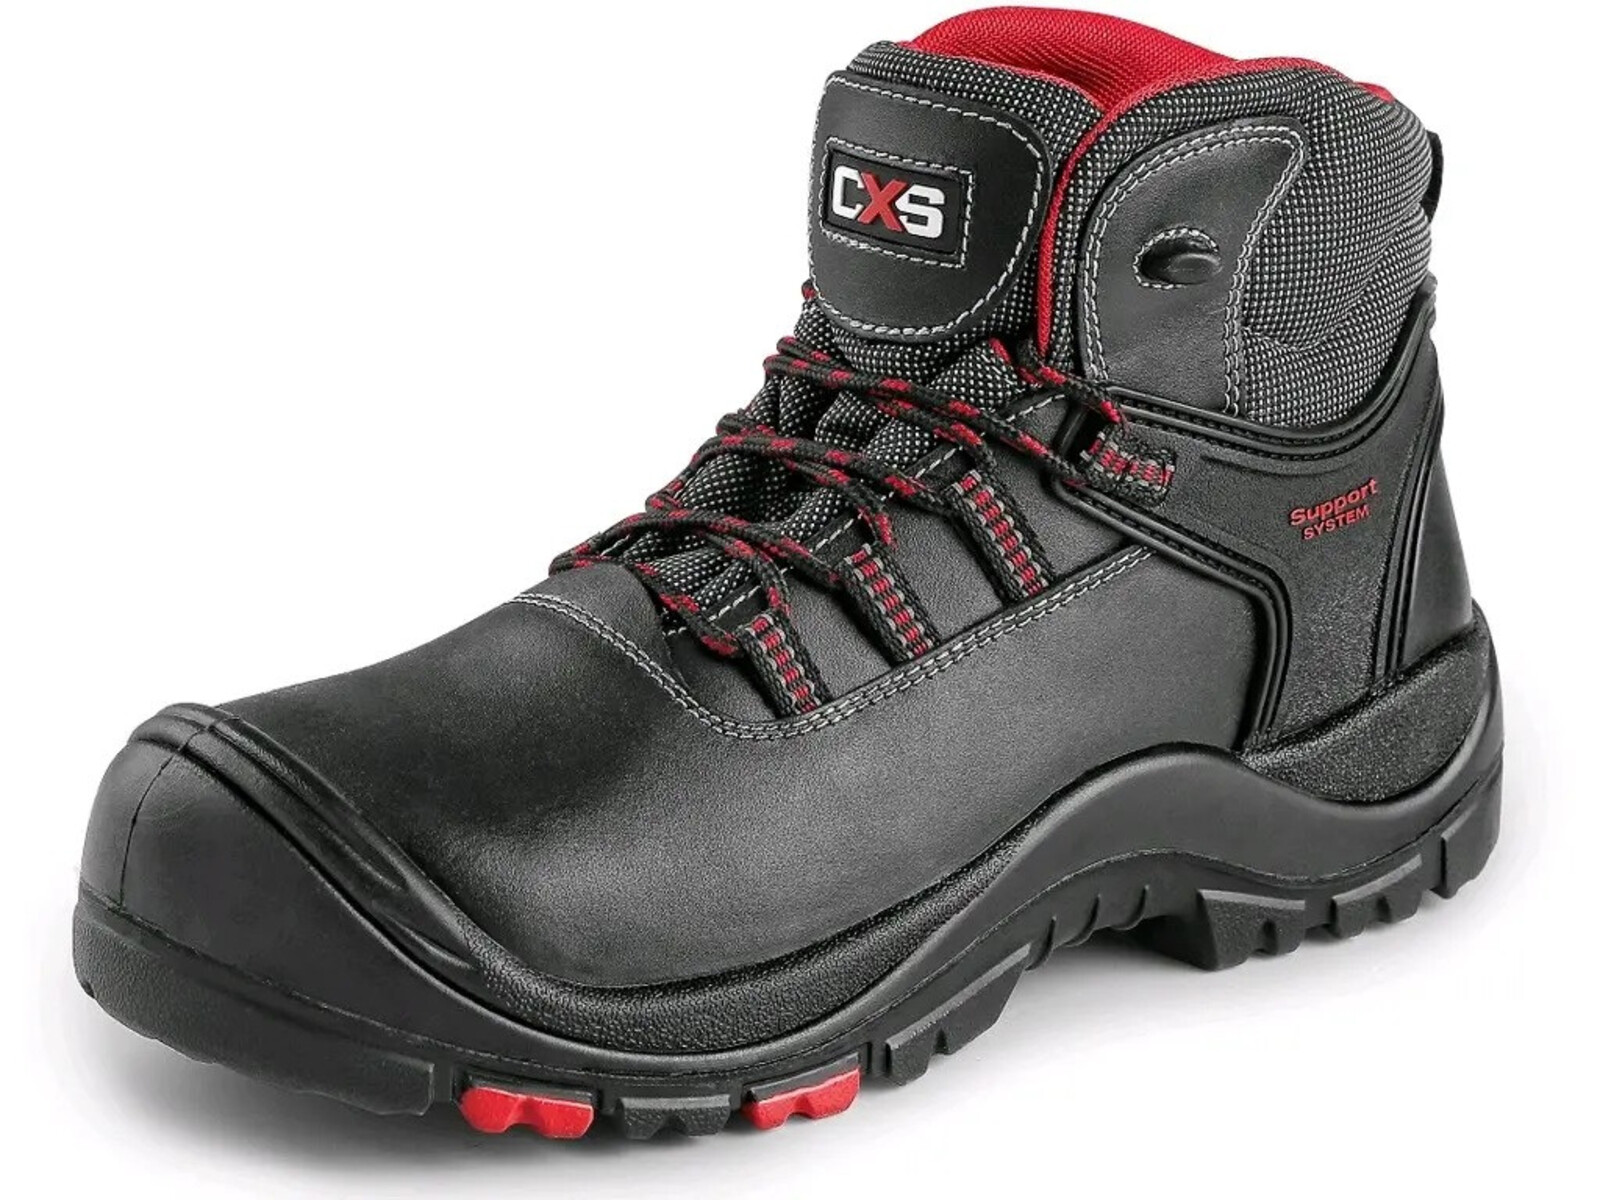 Bezpečnostná členková obuv CXS Rock Granite S3 SRC HRO MF - veľkosť: 47, farba: čierna/červená